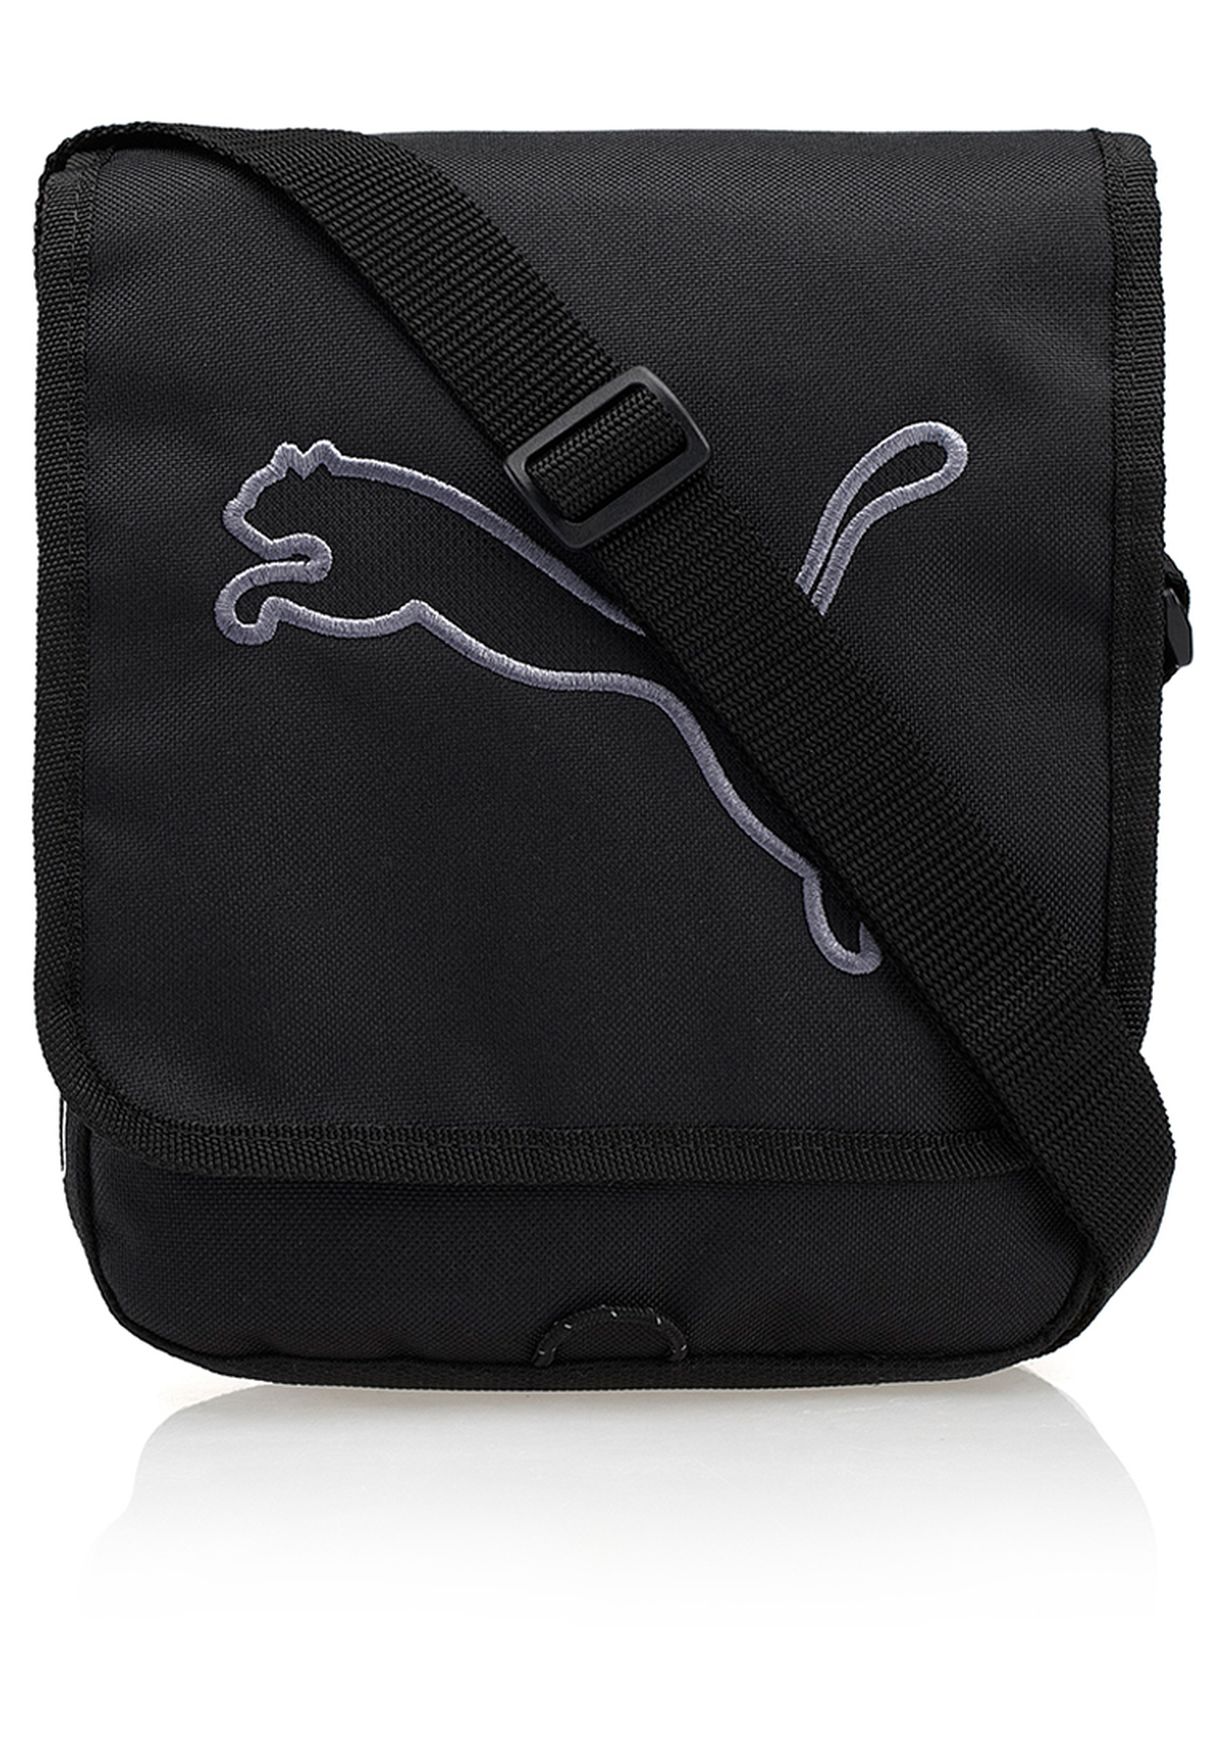 Buy Puma Black Big Cat Portable Bag for 